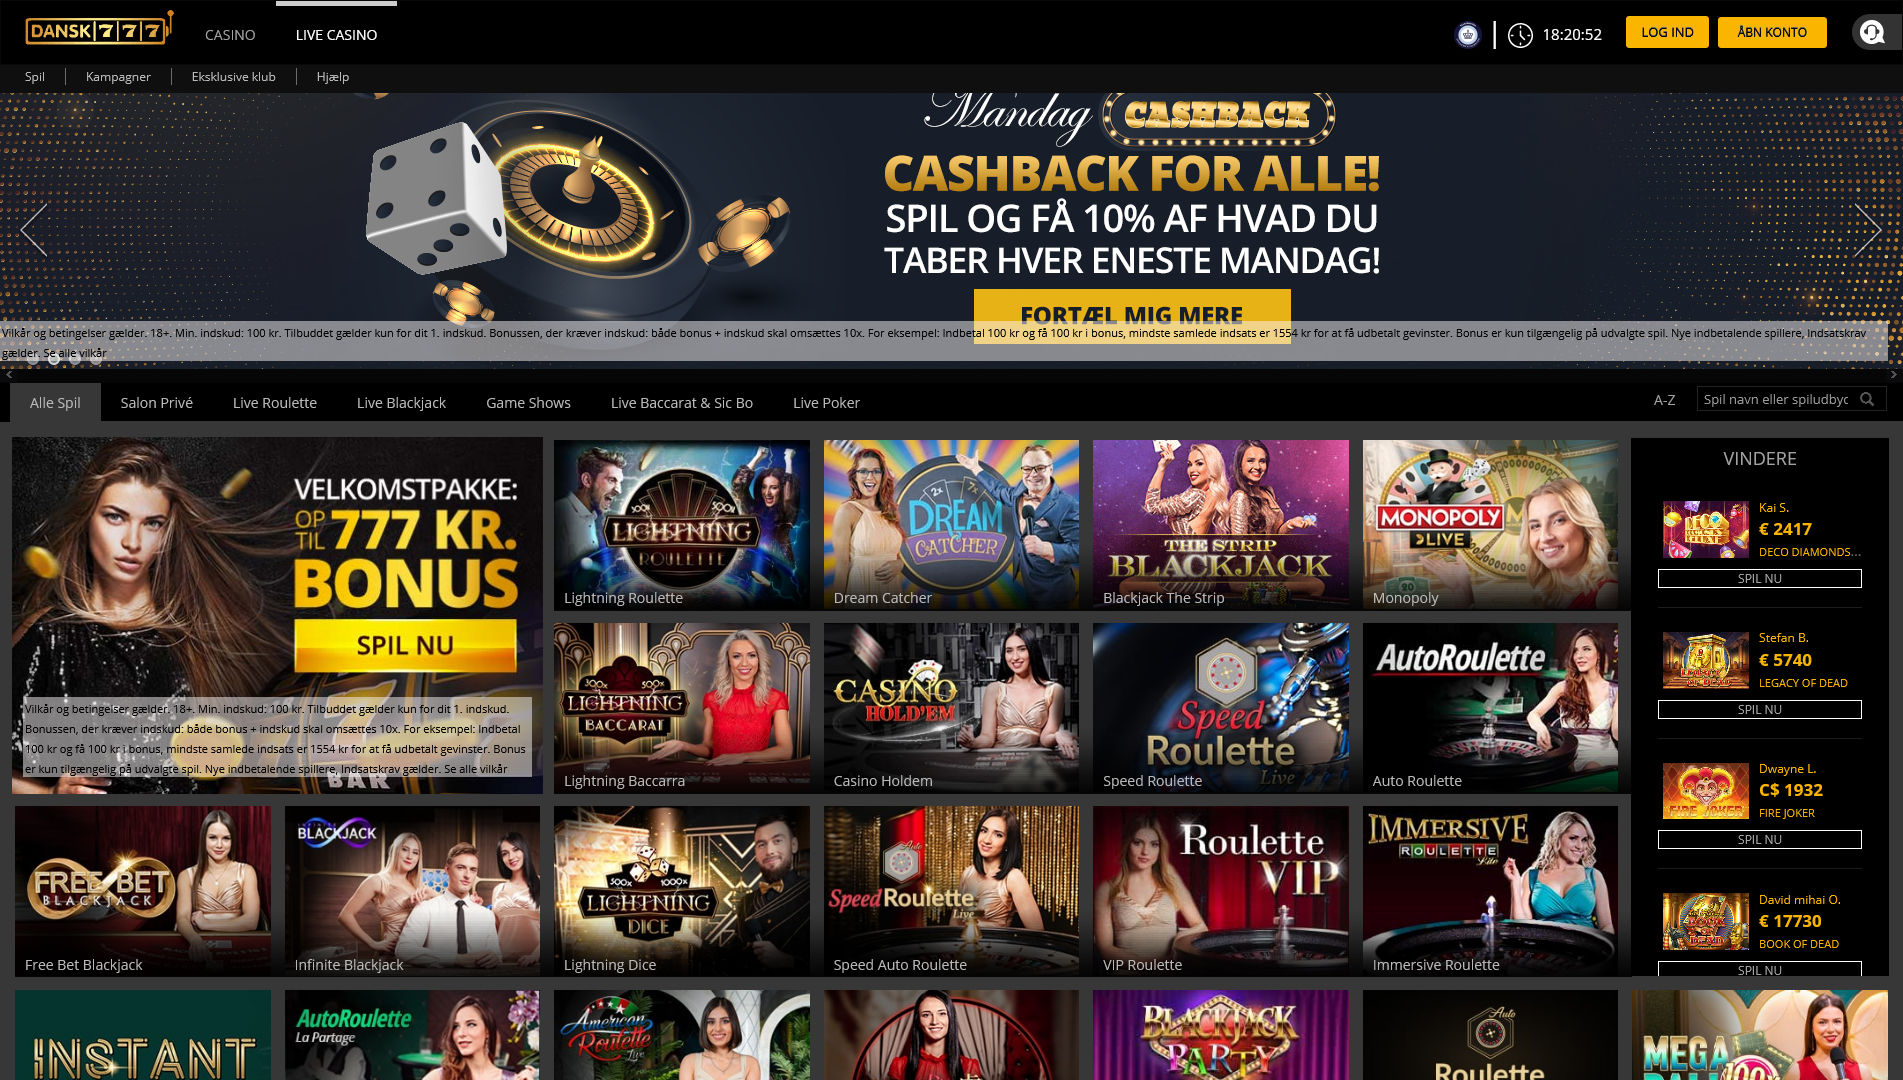 Dansk777 Casino Live Dealer Games